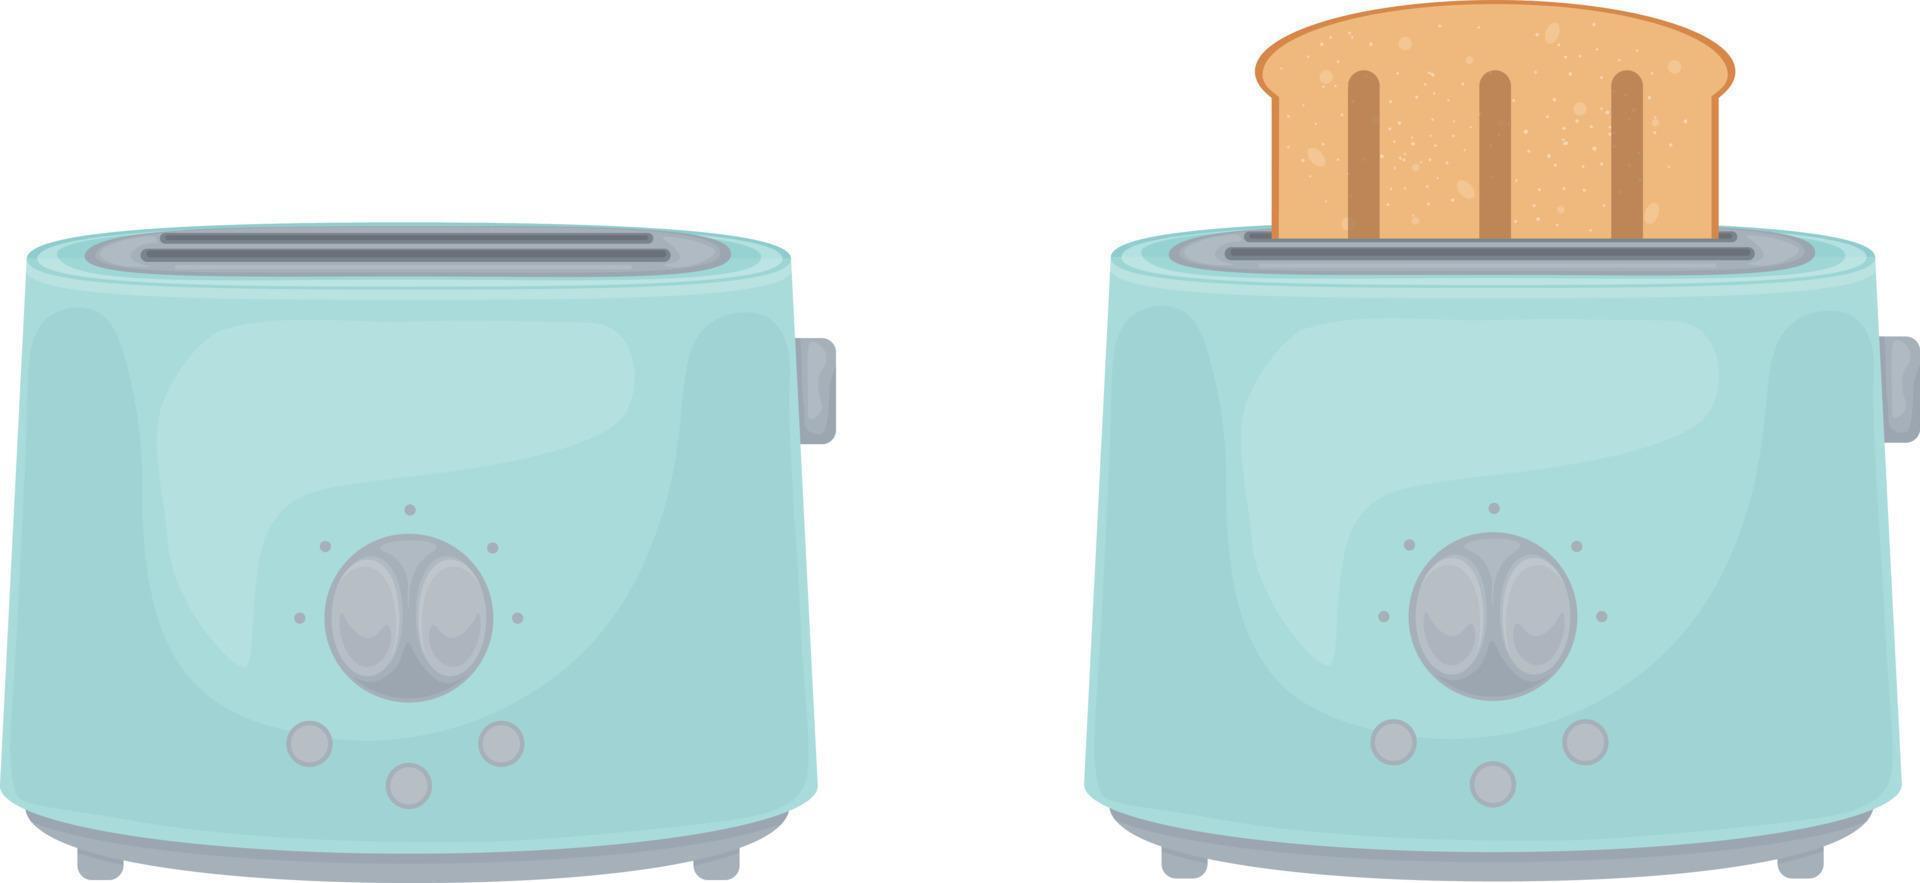 illustration avec l'image des grille-pain bleus. grille-pain avec pain grillé et vide. un appareil de cuisine électrique conçu pour rôtir de fines tranches de pain. illustration vectorielle isolée sur fond blanc vecteur